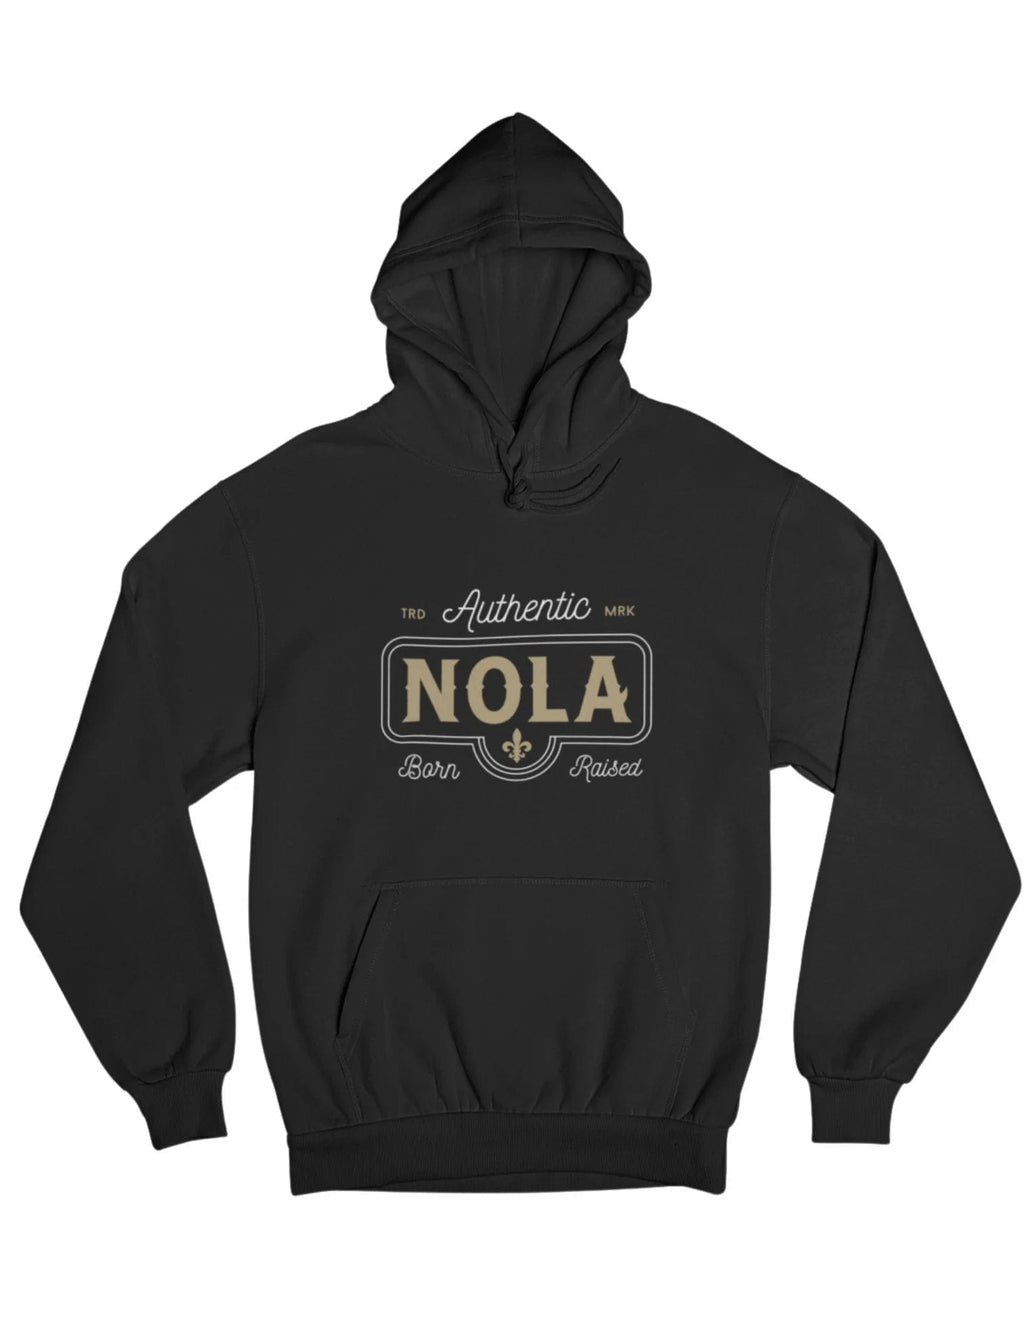 Authentic NOLA Hooded Sweatshirt